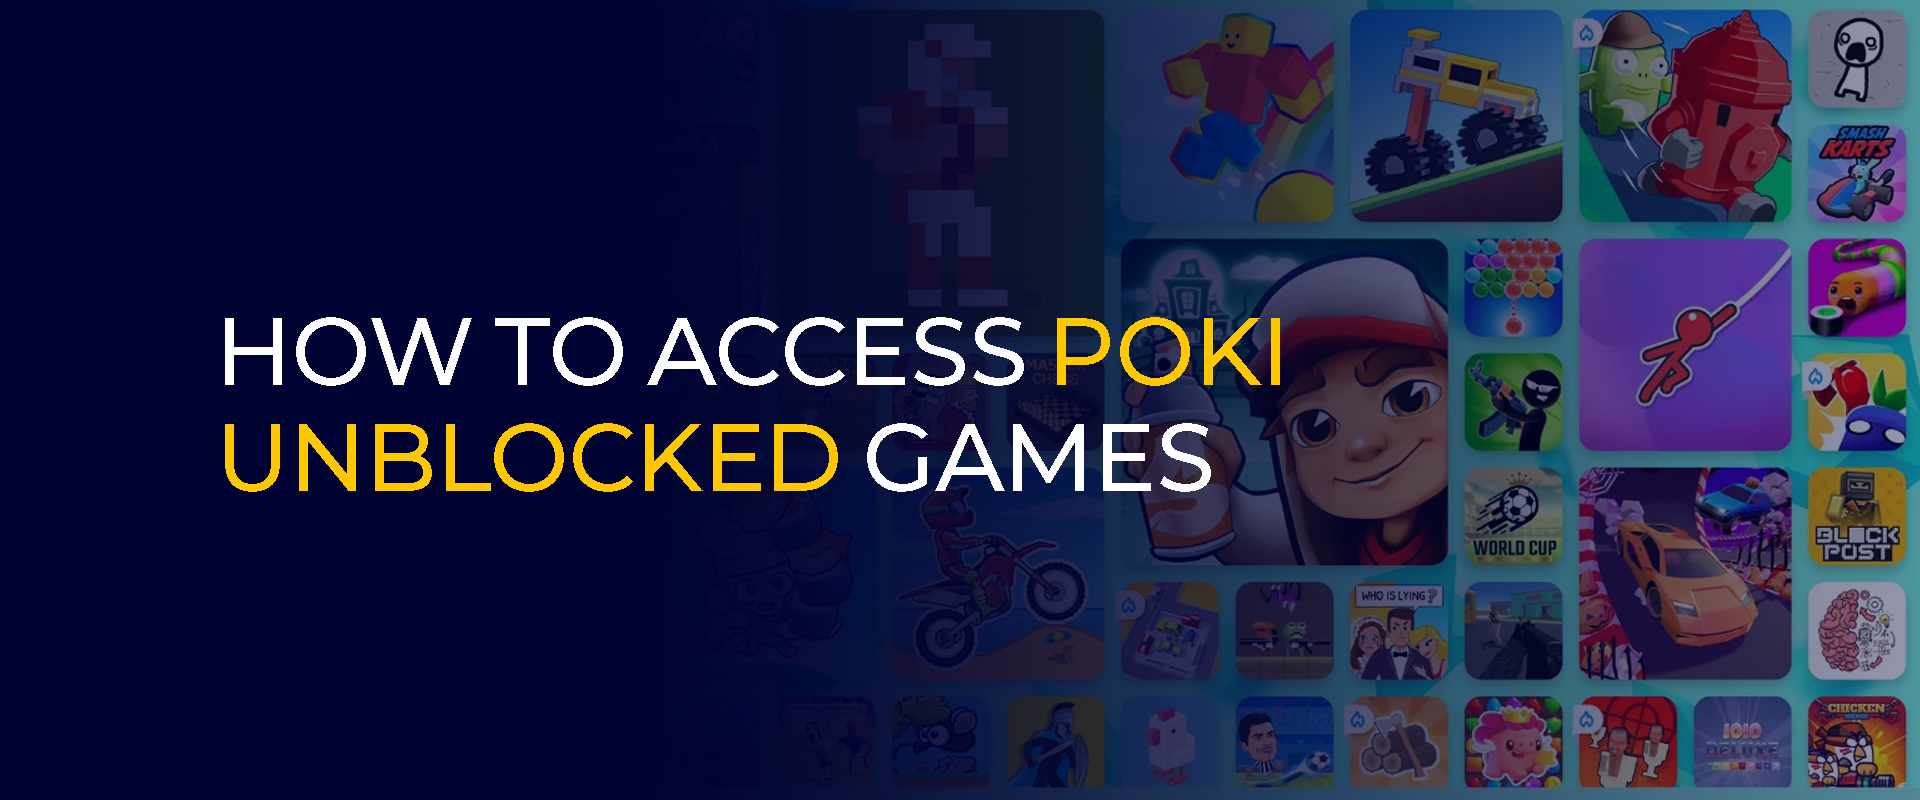 Hur man kommer åt Poki Unblocked Games